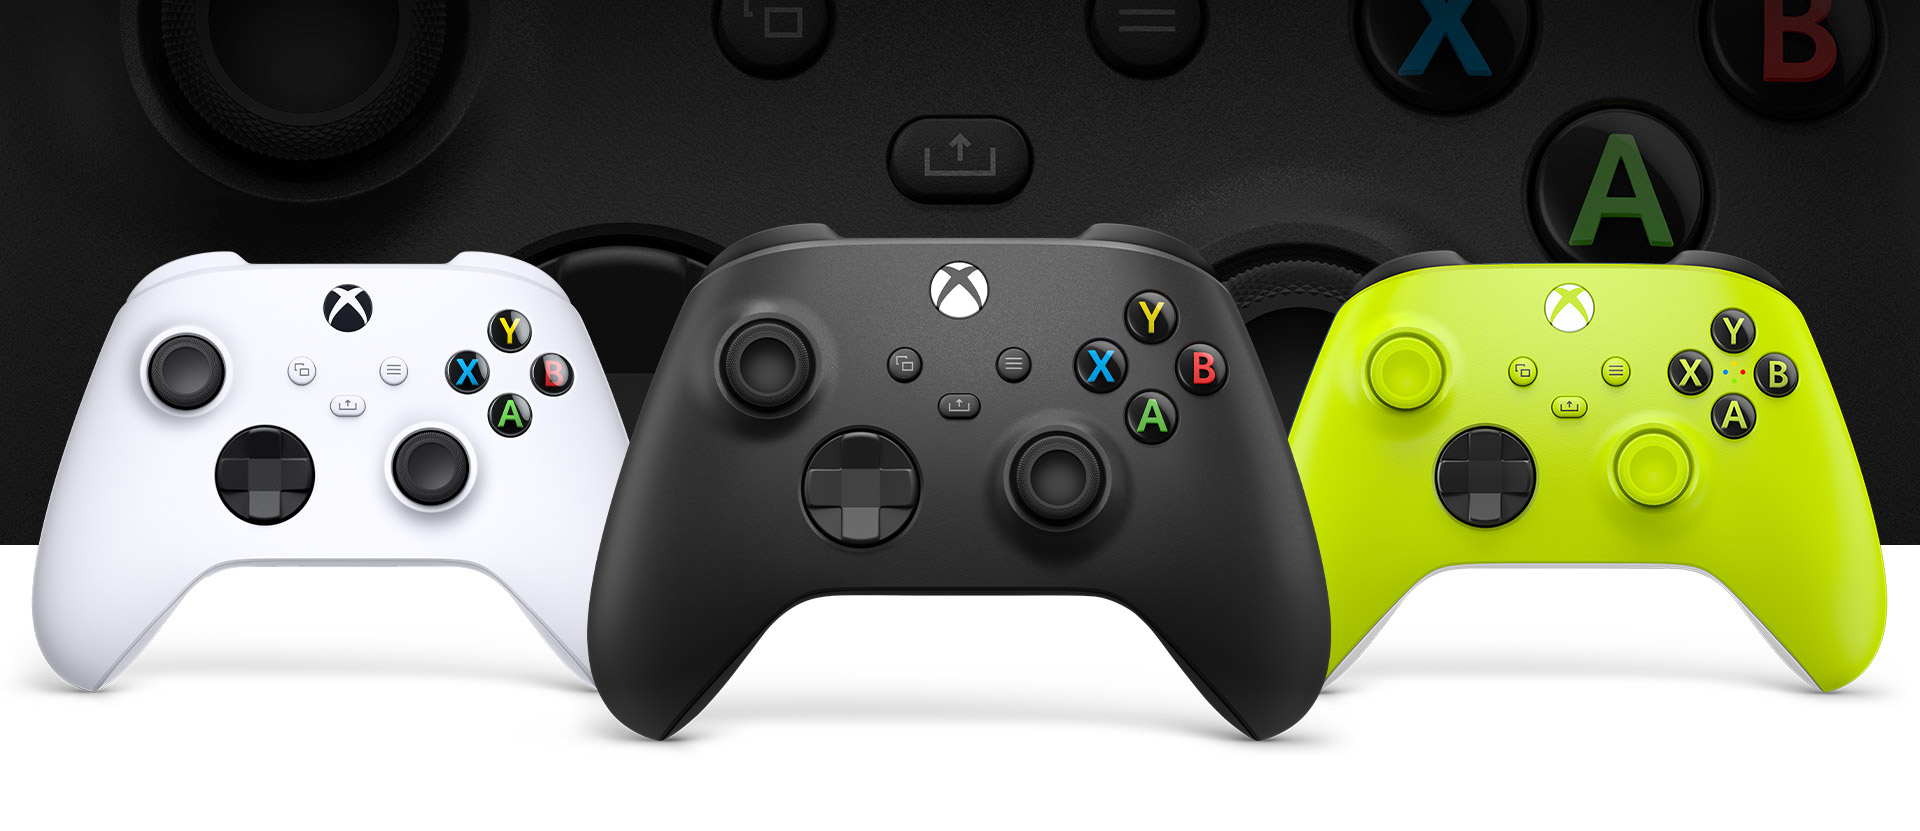 Mando Xbox – Negro carbón delante, con mandos blanco robot y alto voltaje al lado